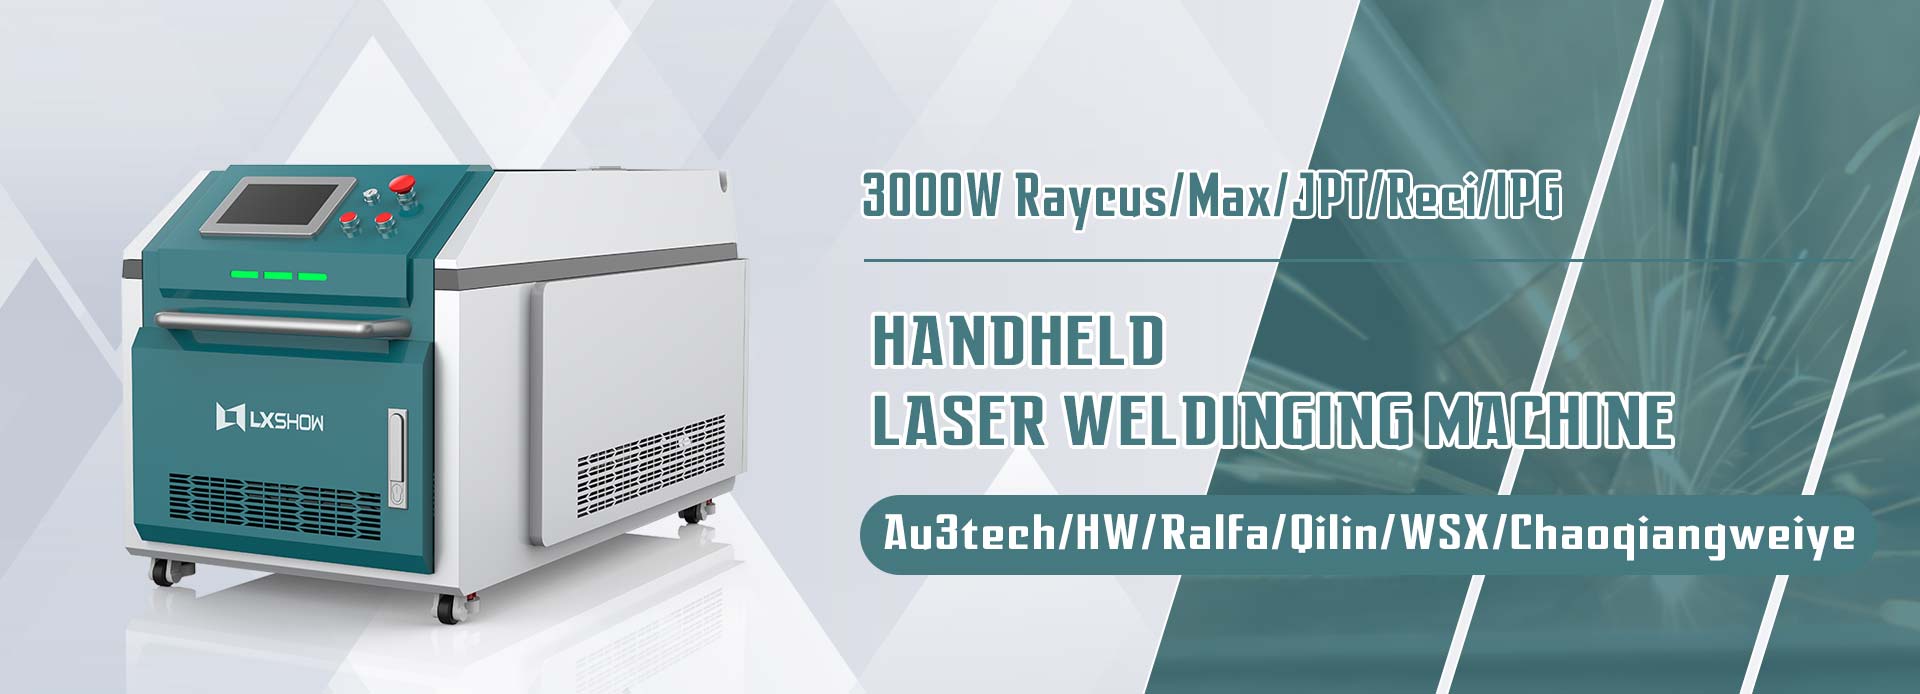 LXW-3000W Yam'manja Fiber Optic Laser Welding Machine Zitsulo SS Chitsulo cha Iron Carbon